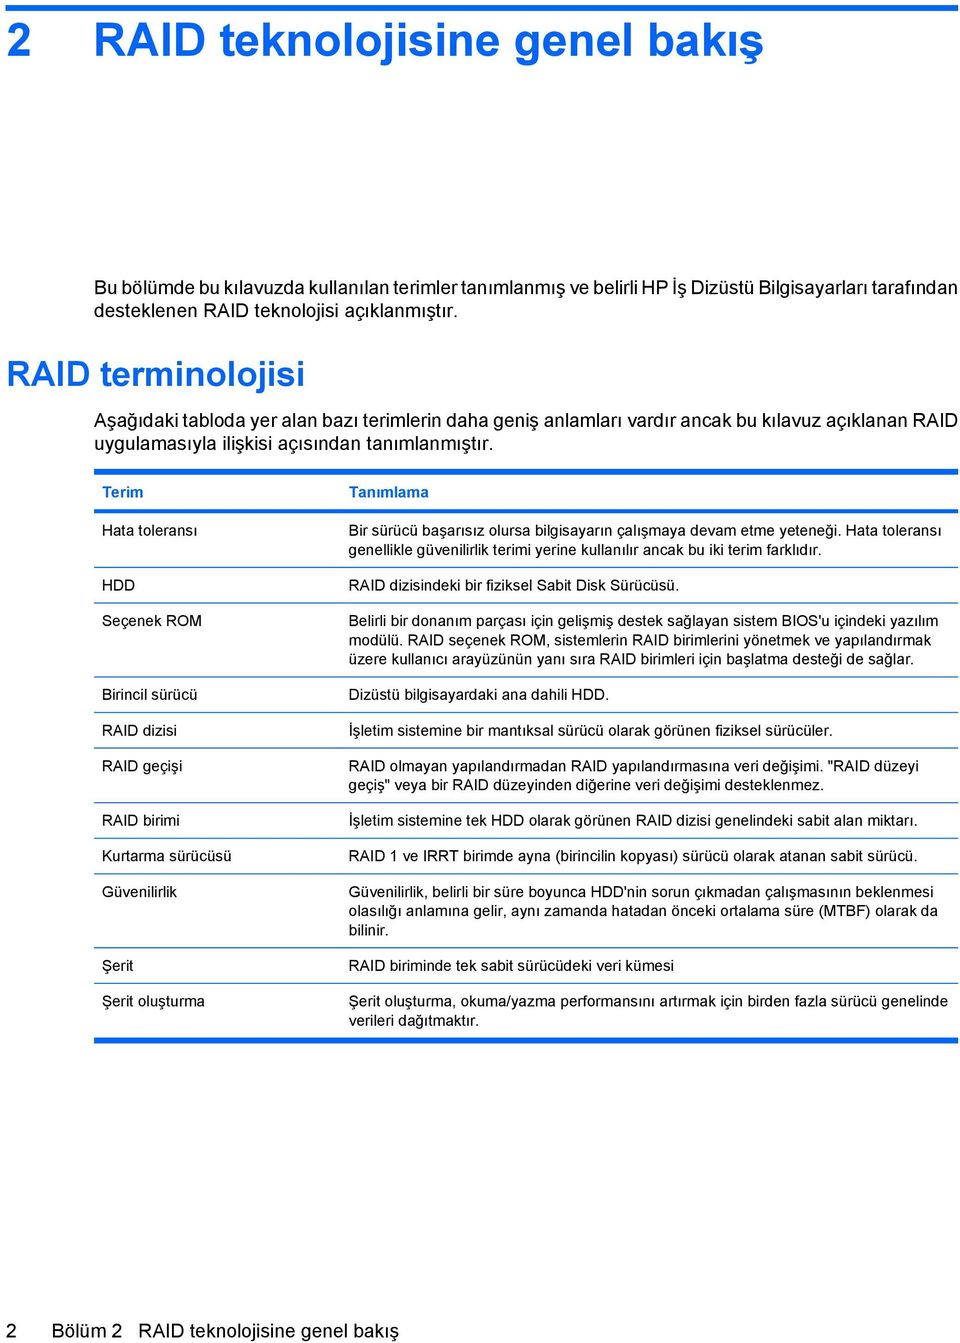 Terim Hata toleransı HDD Seçenek ROM Birincil sürücü RAID dizisi RAID geçişi RAID birimi Kurtarma sürücüsü Güvenilirlik Şerit Şerit oluşturma Tanımlama Bir sürücü başarısız olursa bilgisayarın